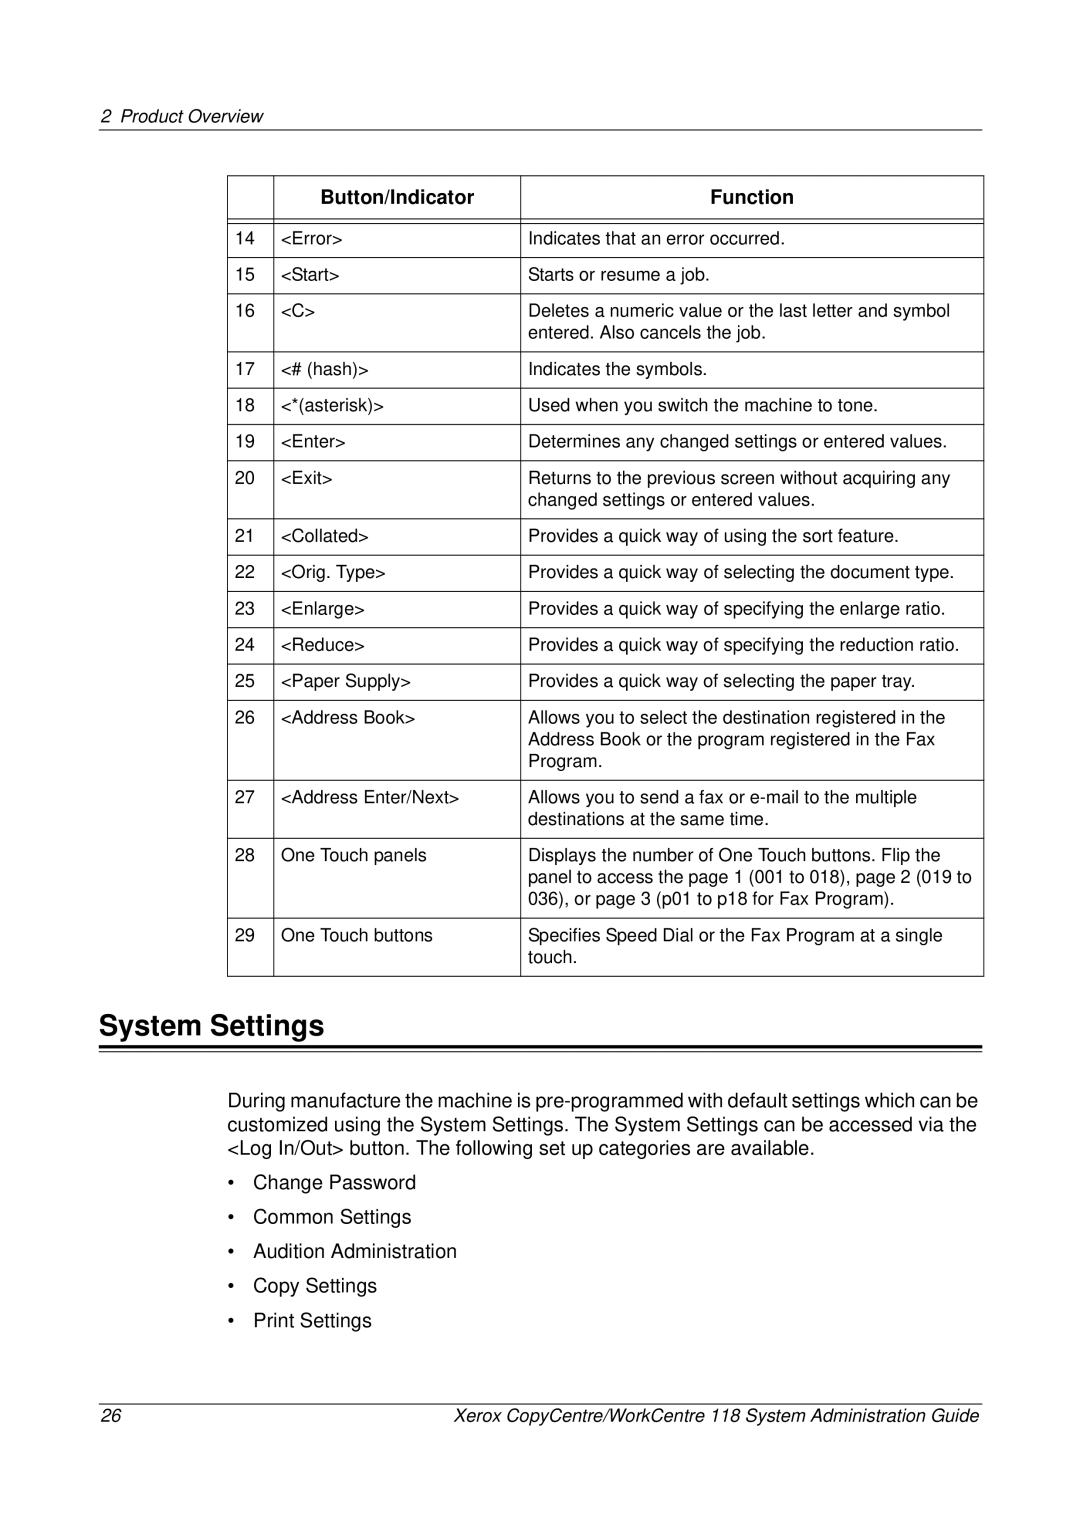 Xerox 701P42722_EN manual System Settings 